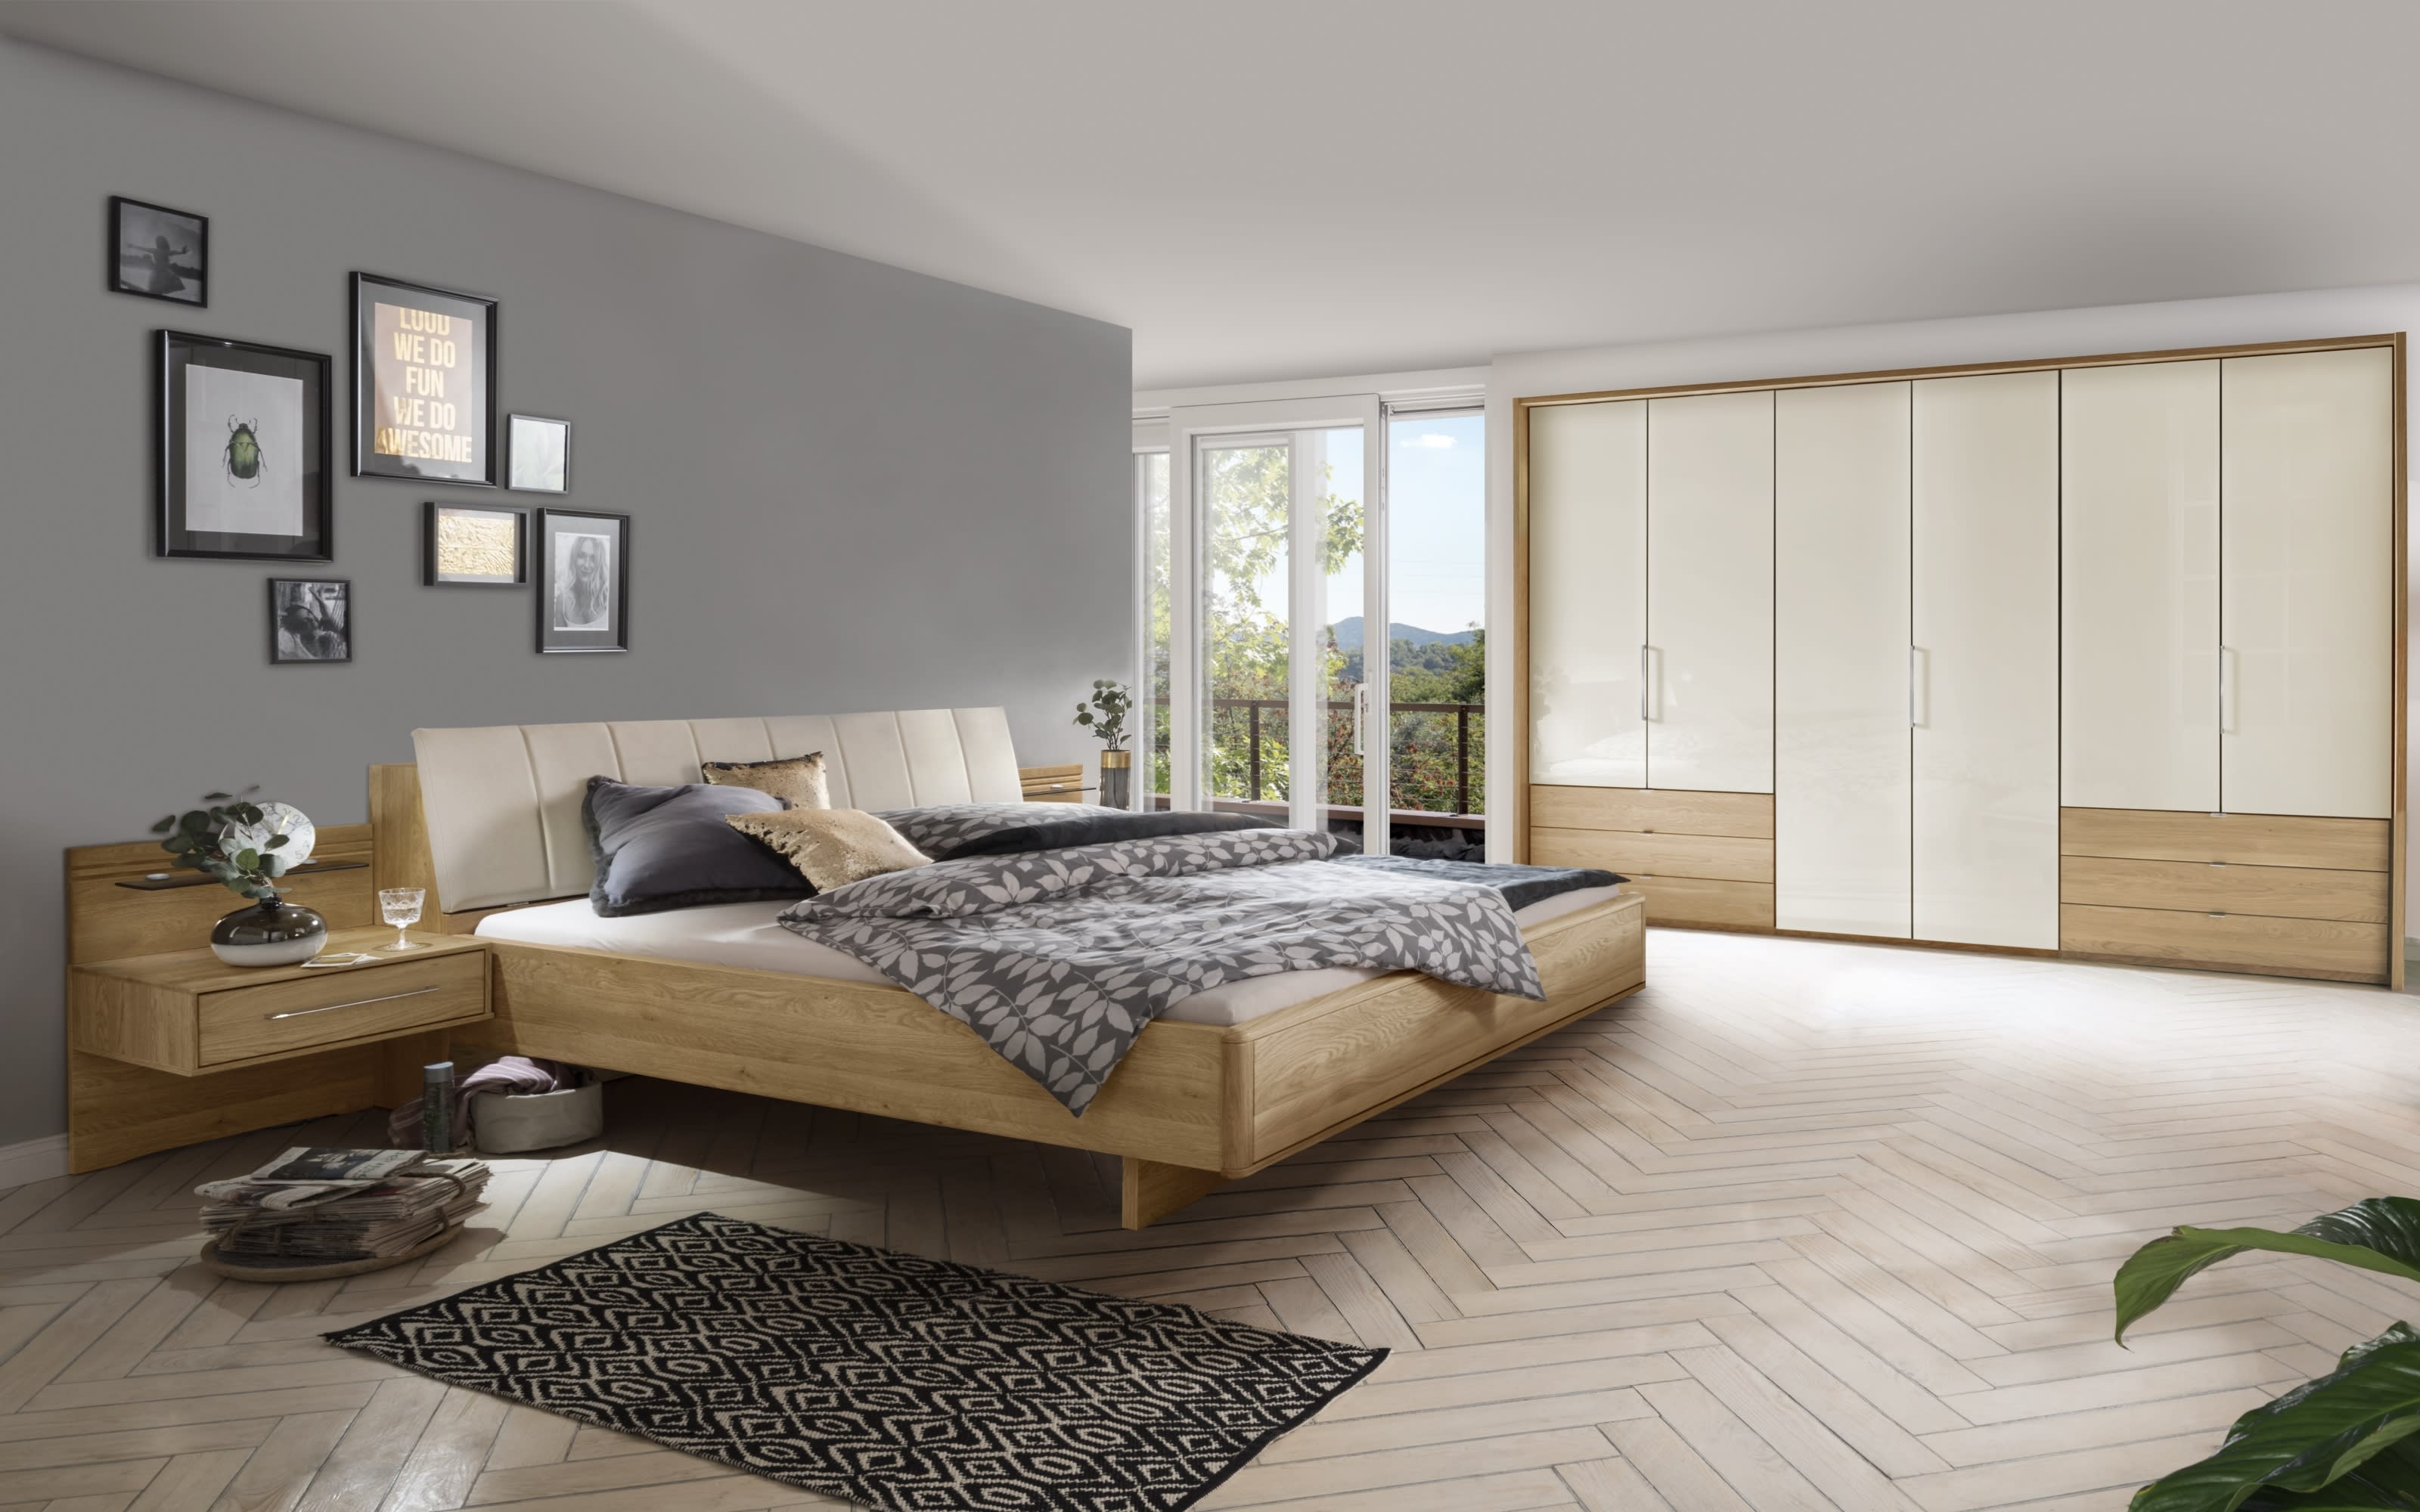 Schlafzimmer Serena Plus, Eiche teilmassiv, 200 x 200 cm, Schrank 300 x 236 cm